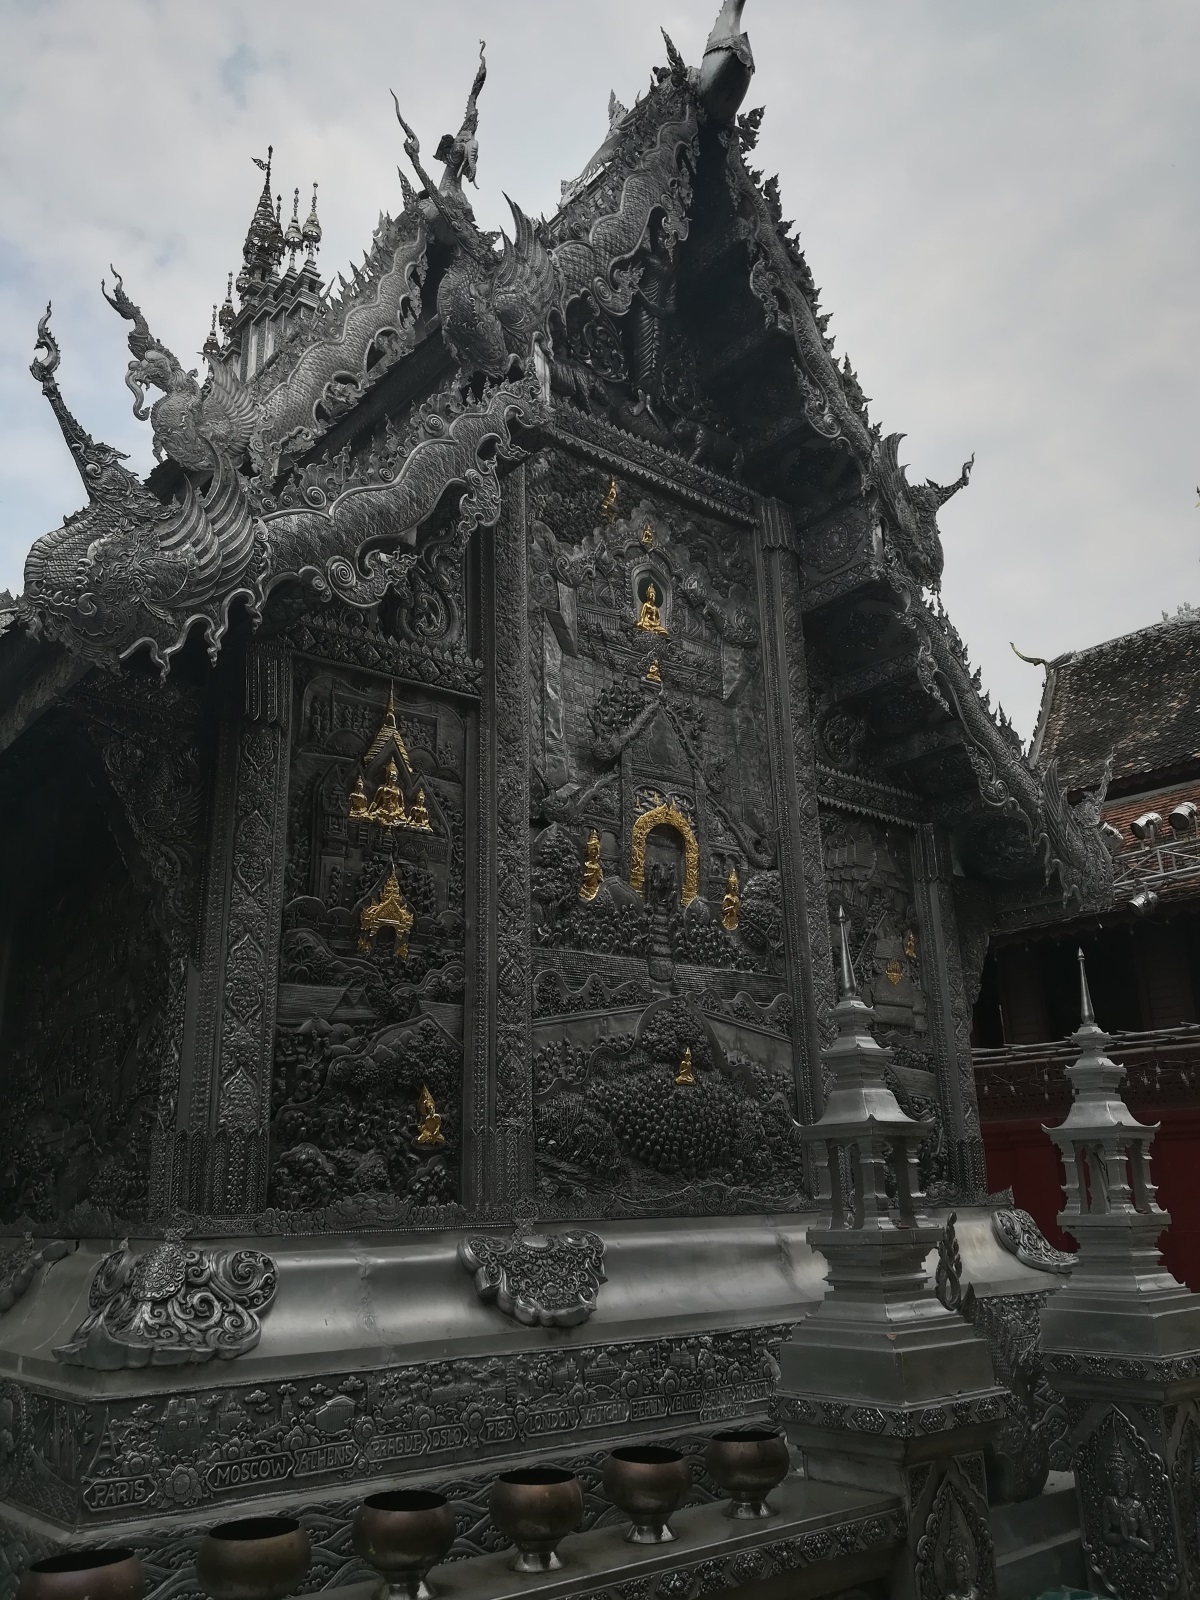 Единственият сребърен храм в Тайланд се намира в град Чианг Май. Входът за жени в Wat Sri Suphan е забранен. Любопитното е, че на гърба на тази величествена сграда са изписани имената на някои столици от цял свят, включително присъства и София. Близо до храма монаси се учат да обработват сребро. В началото работят с алуминий, докато не станат достатъчно добри в занаята.